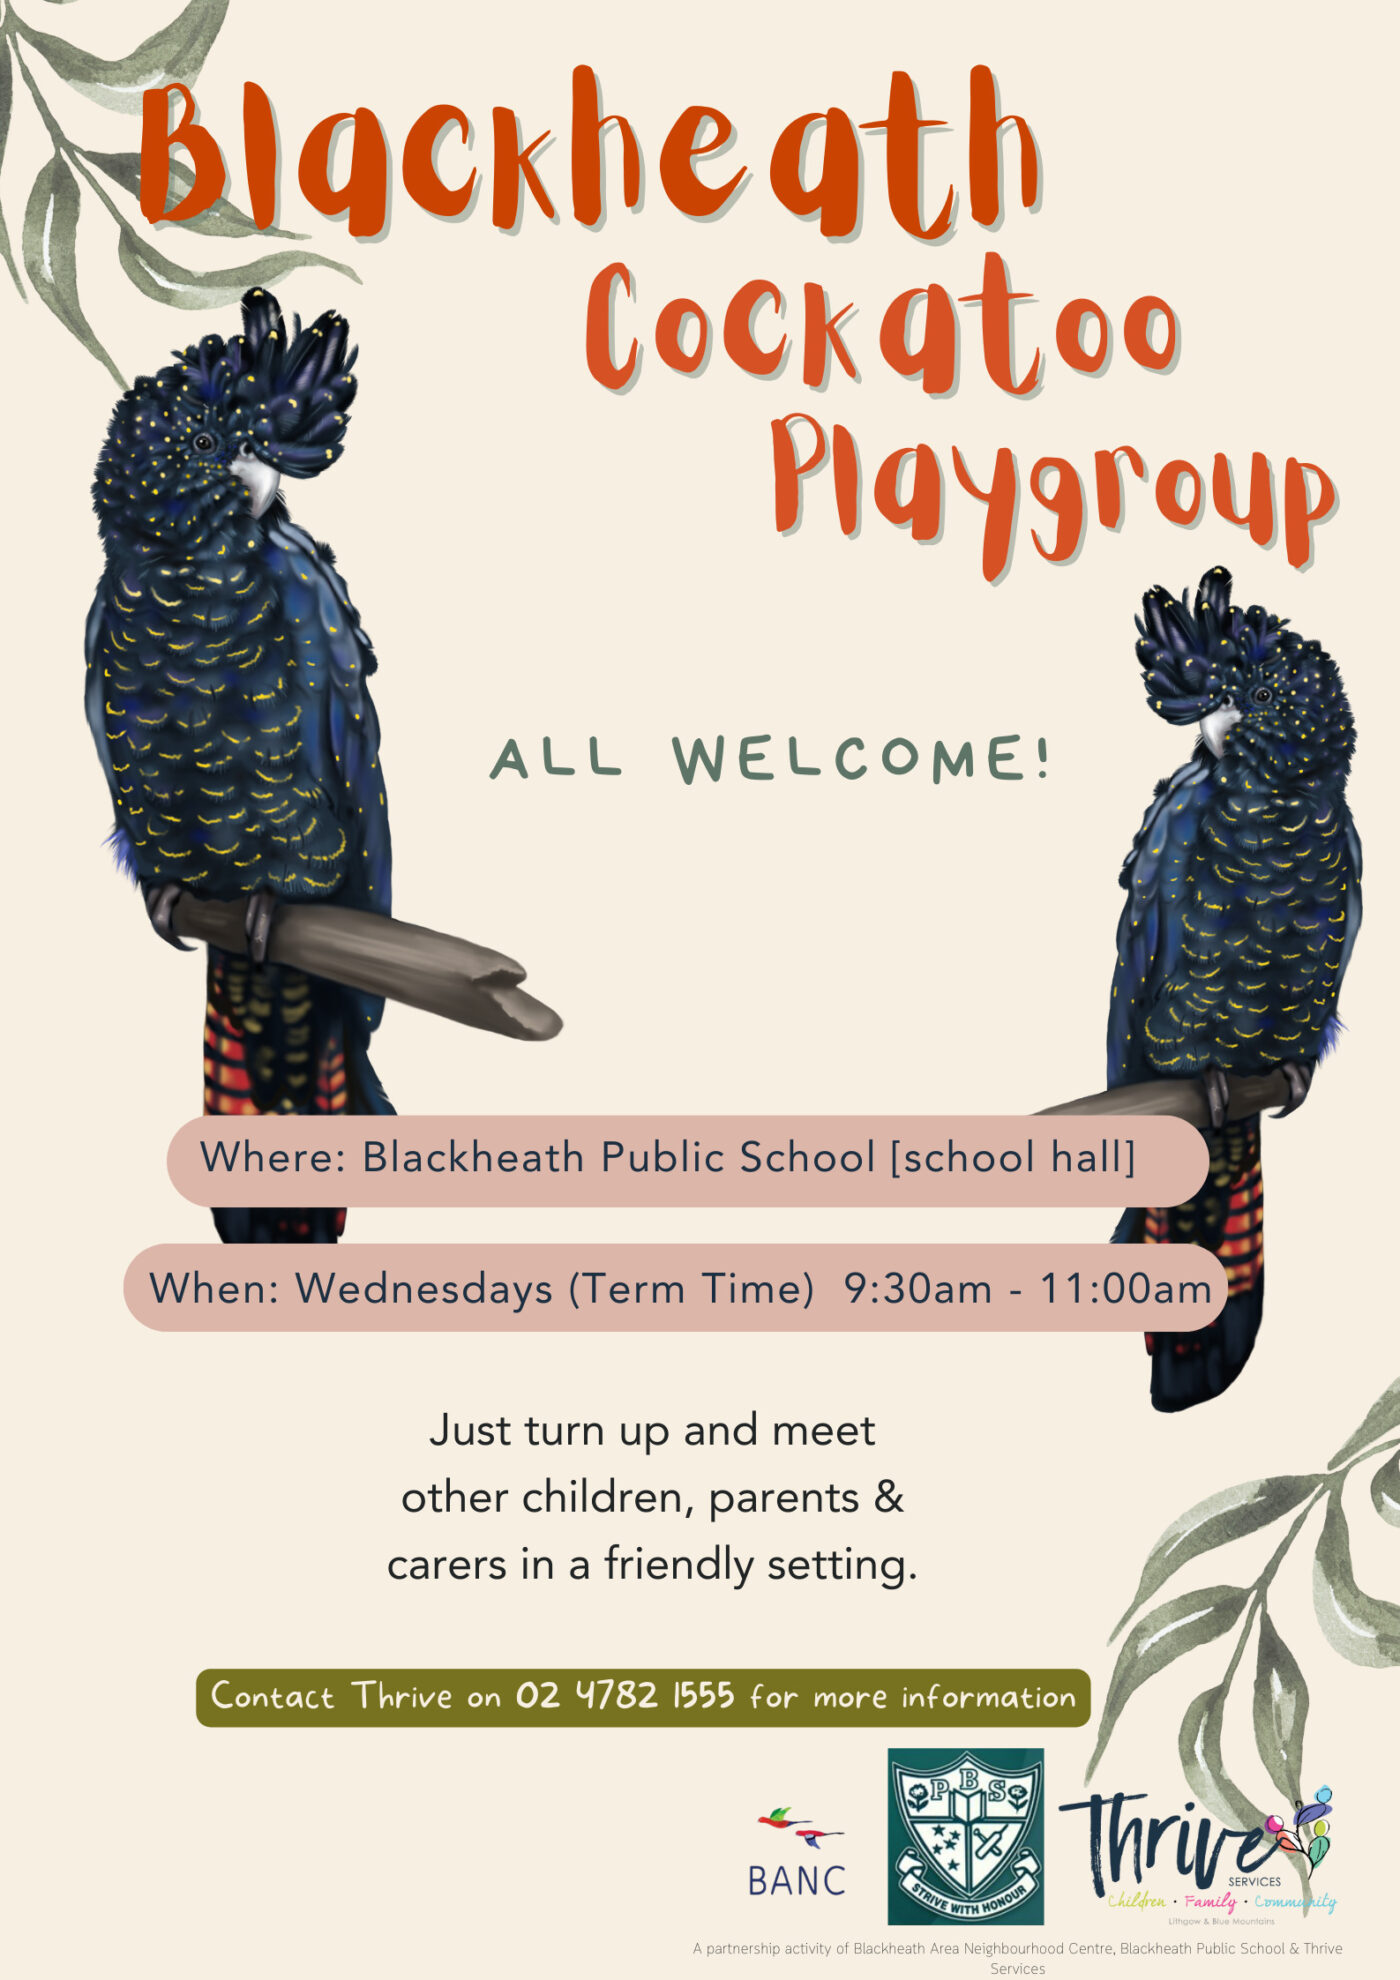 Blackheath cockatoo playgroup